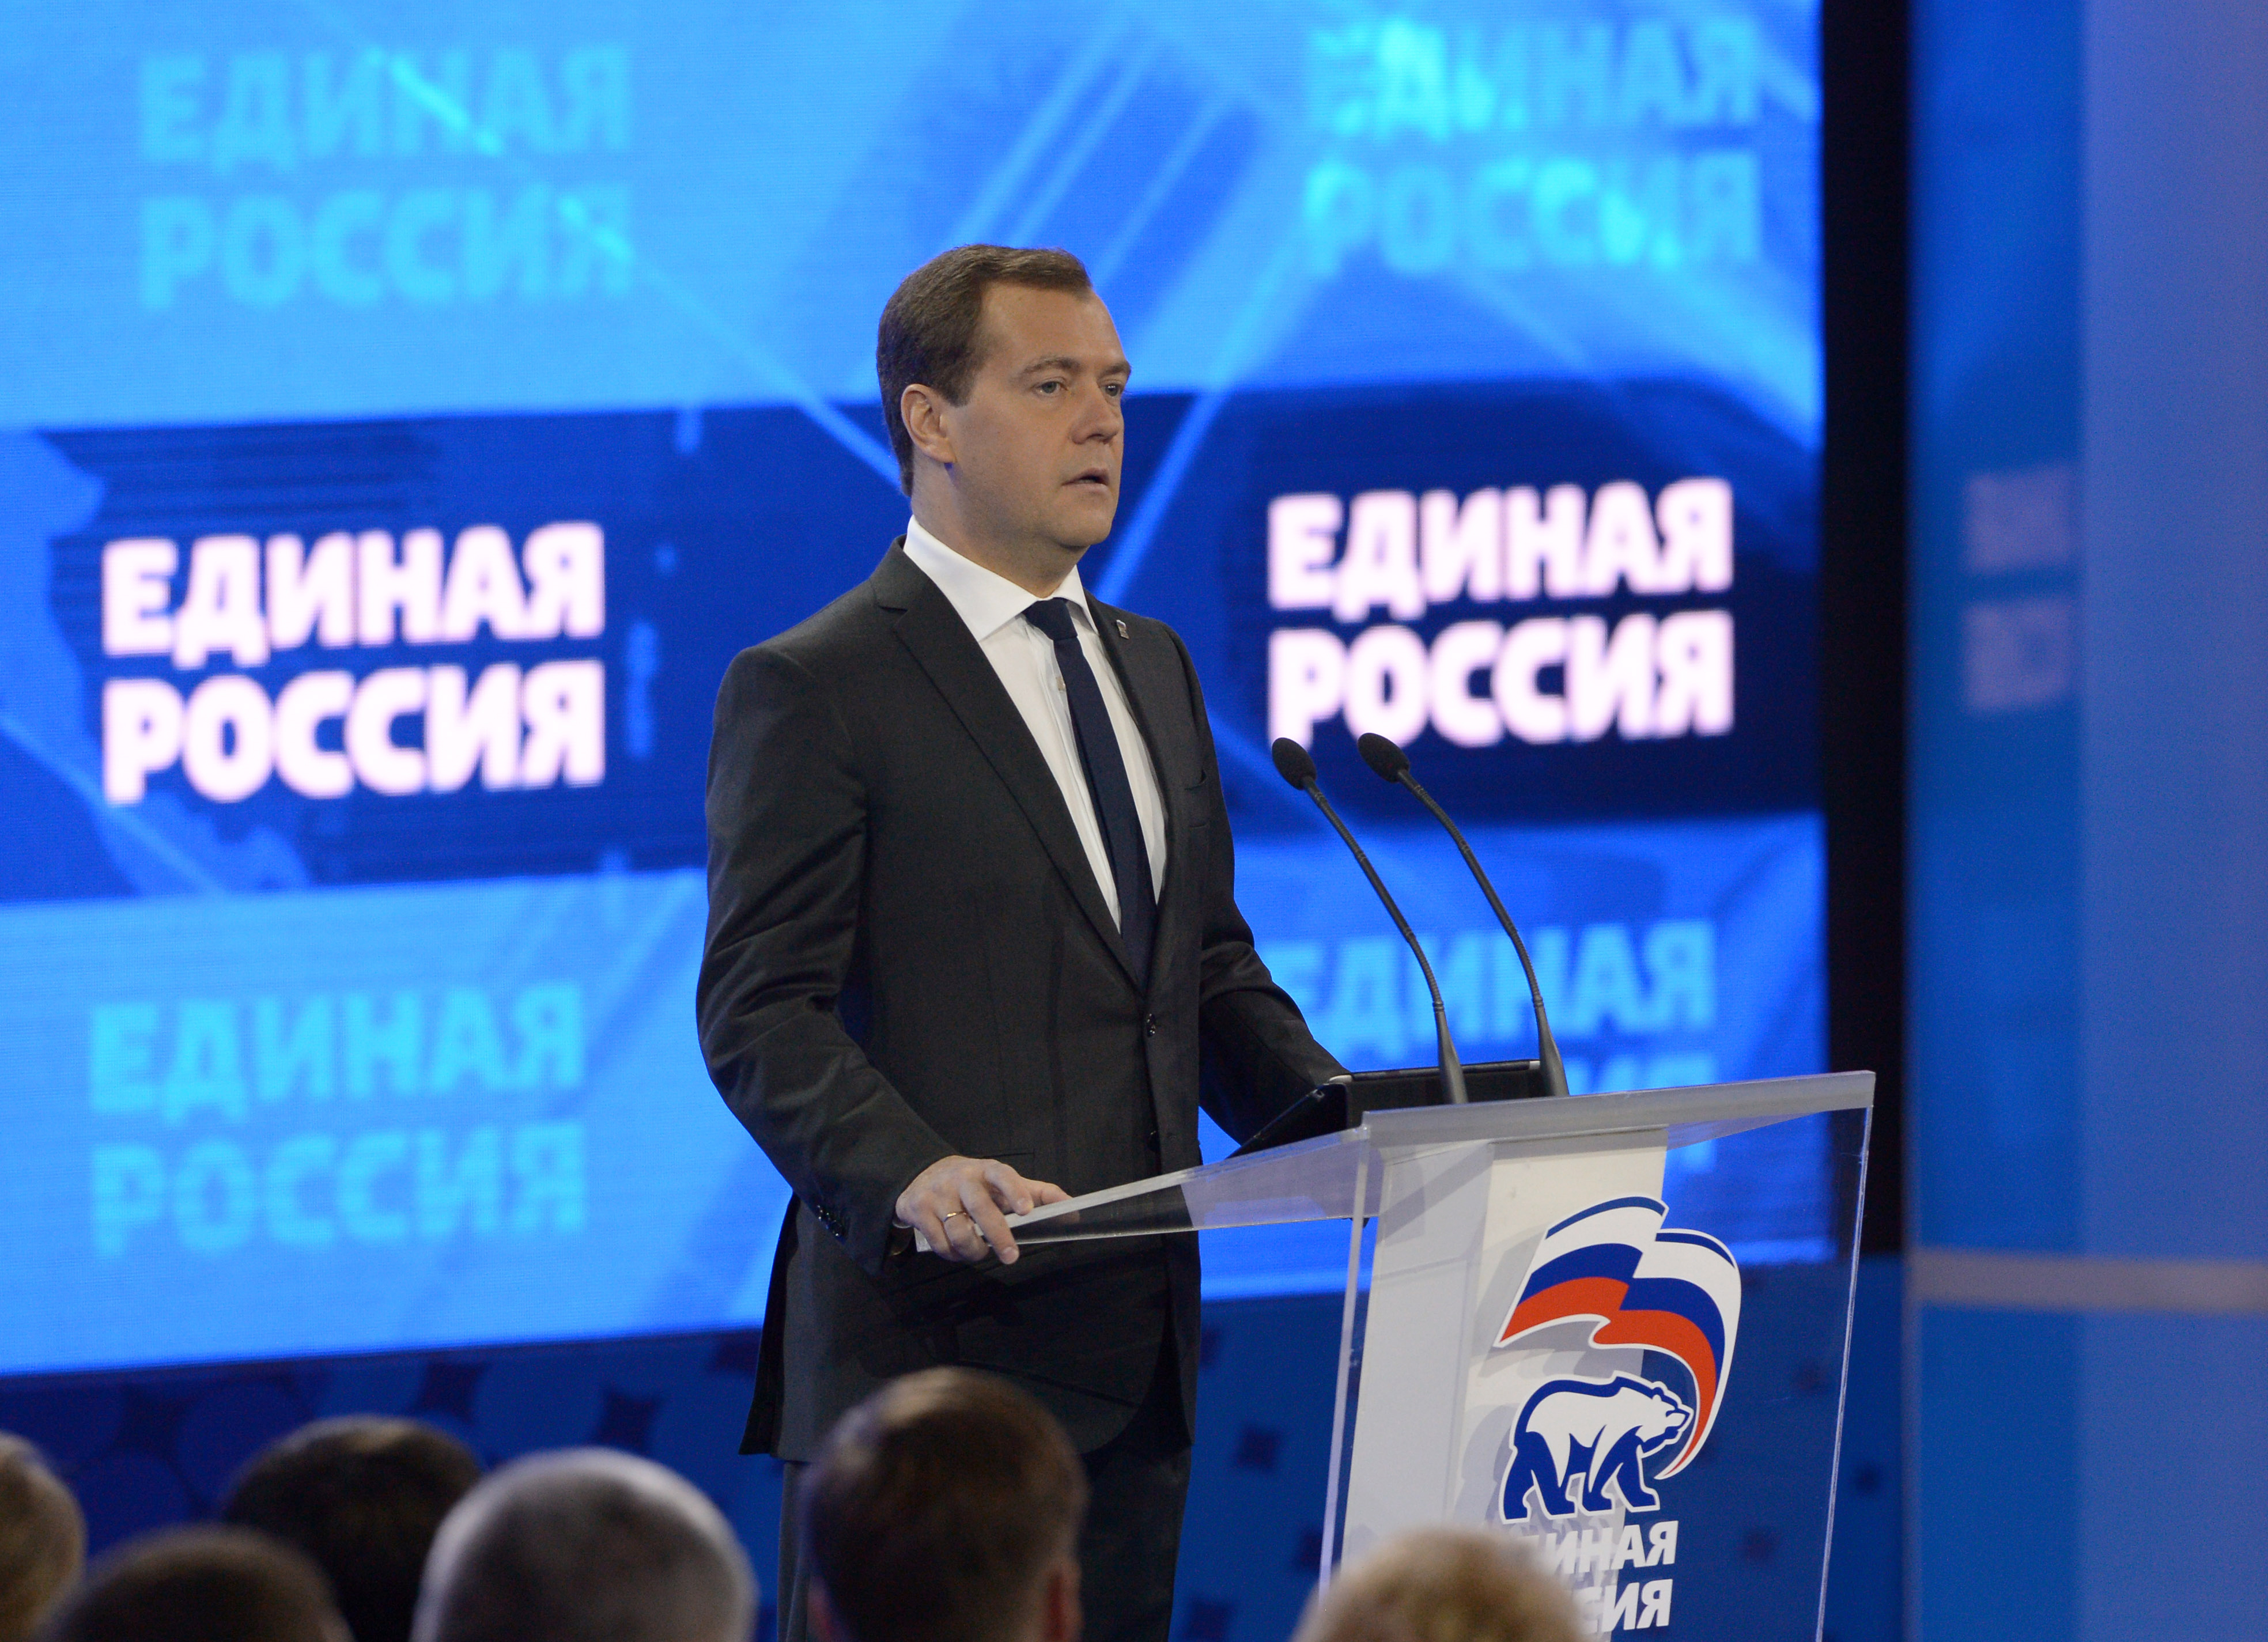 Д.Медведев на съезде партии "Единая Россия"